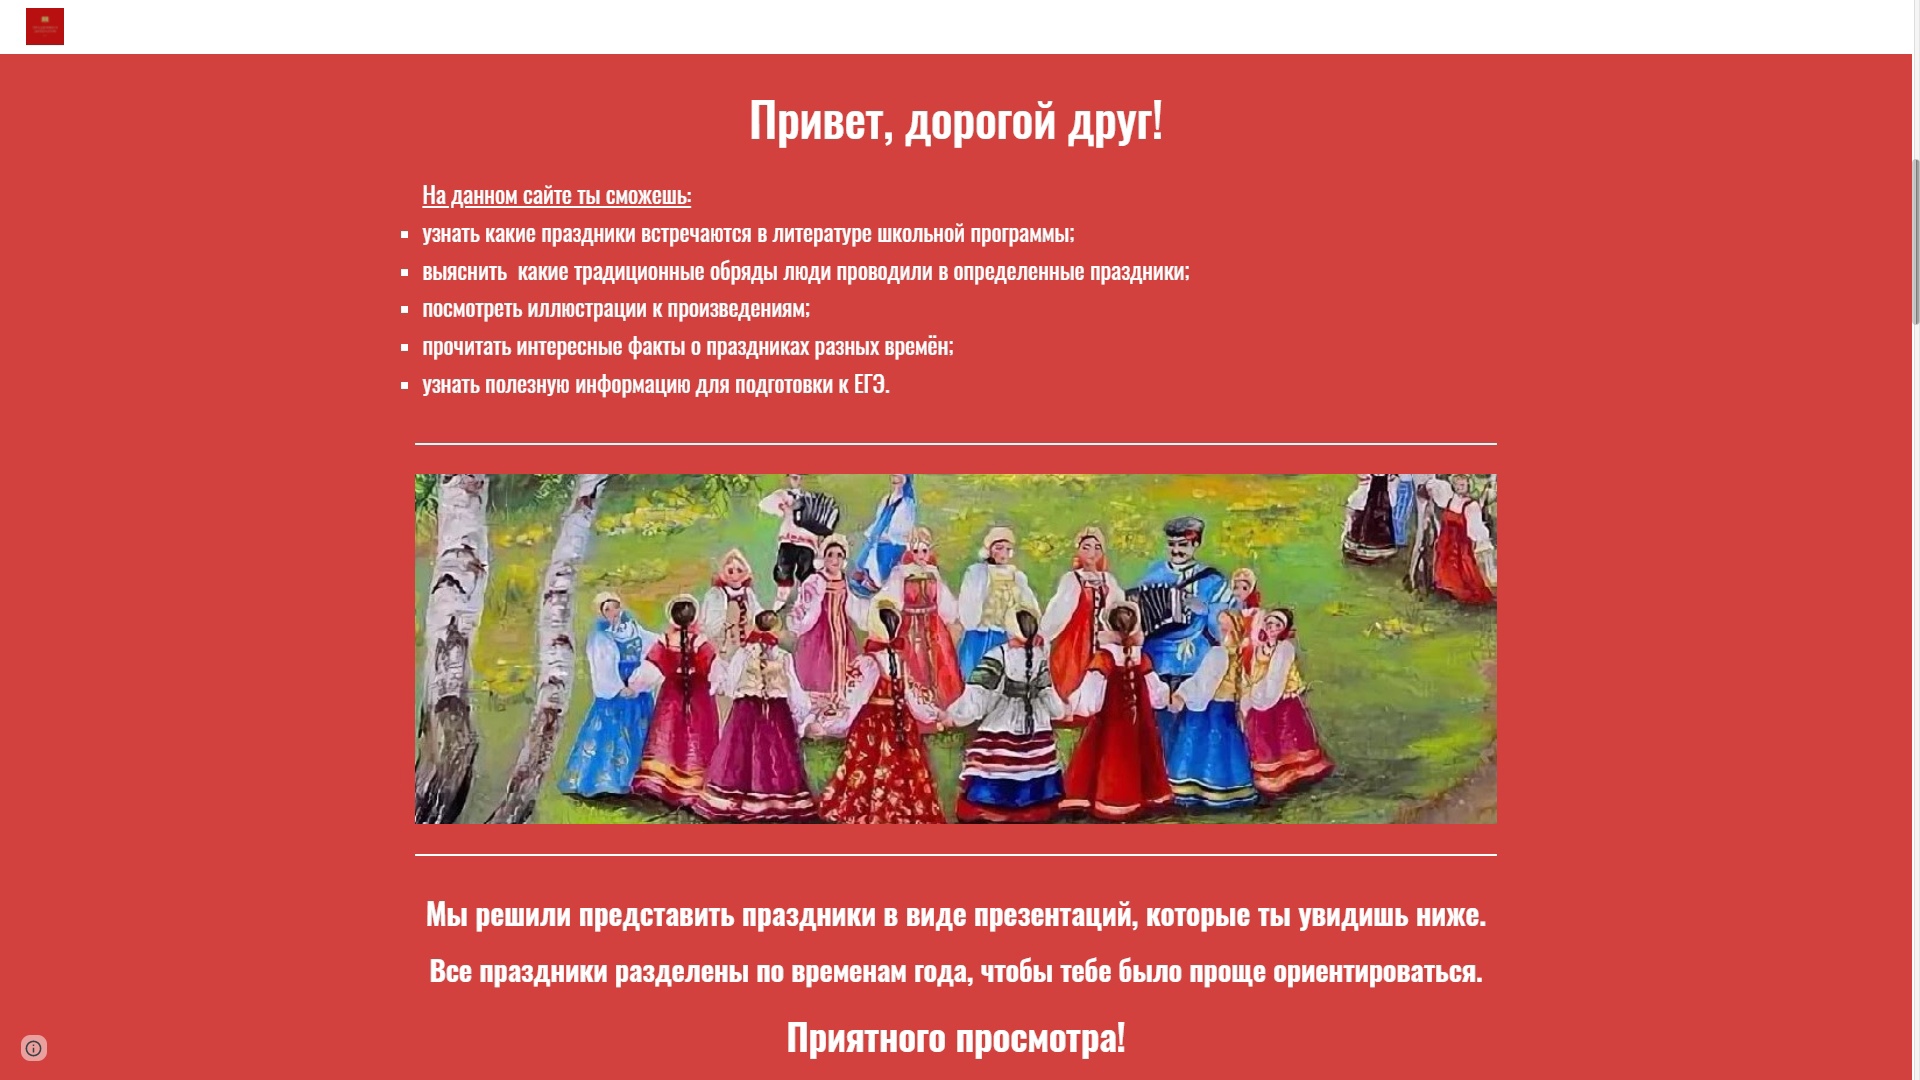 Коринь, Пономарева, Николаев - праздники в литературе1